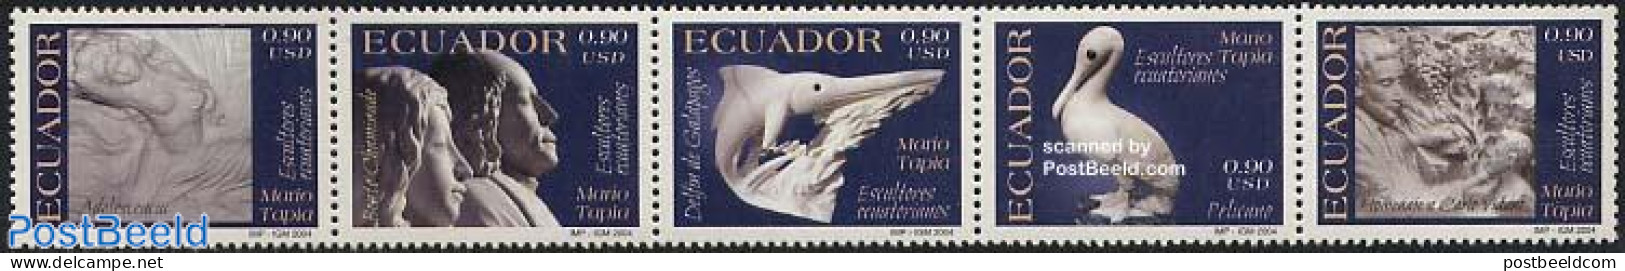 Ecuador 2004 Sculptures 5v [::::], Mint NH, Nature - Birds - Fish - Art - Sculpture - Peces